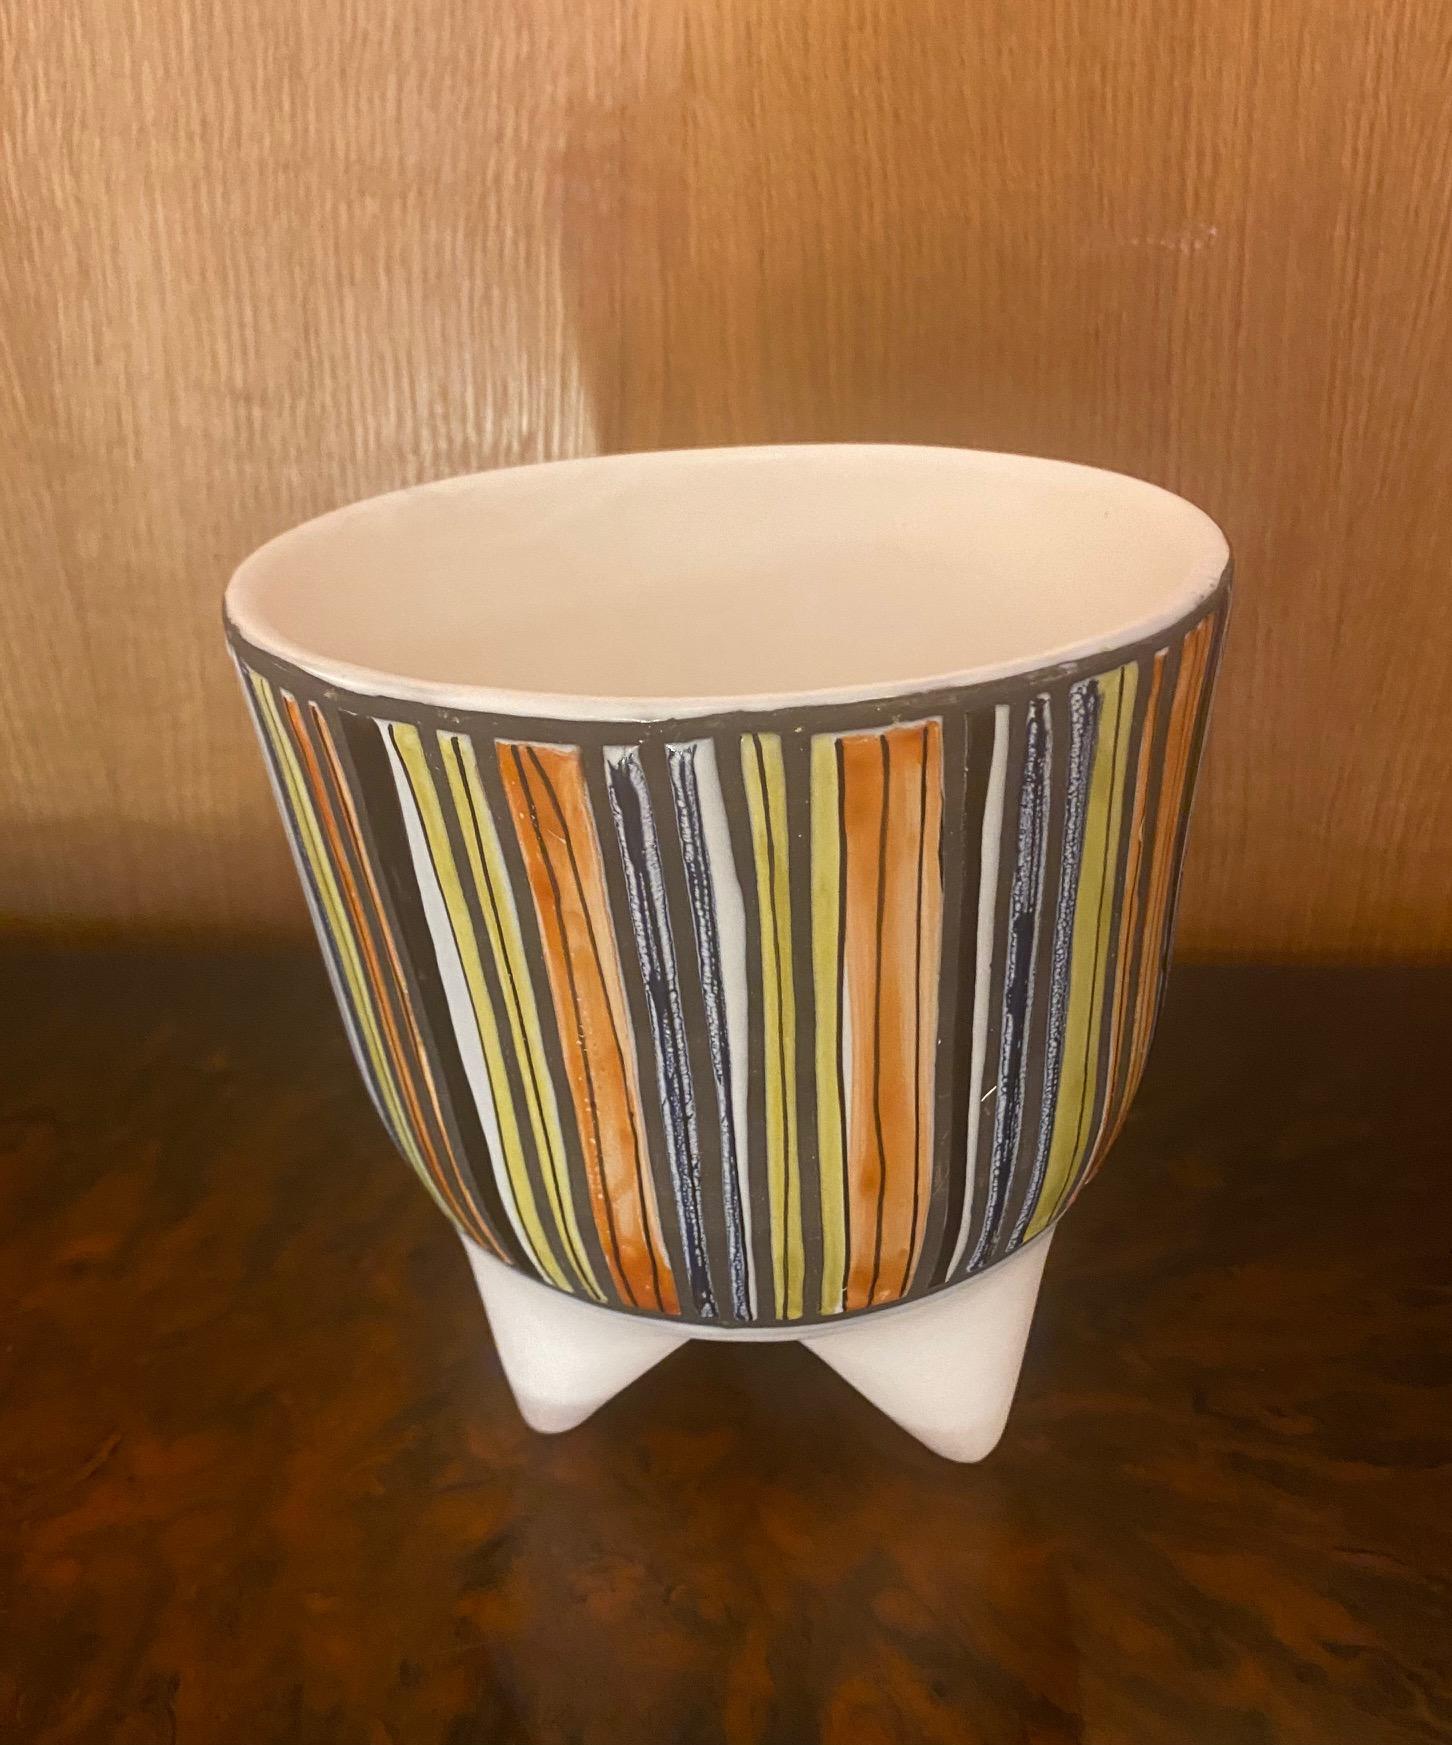 Ceramic Vase 